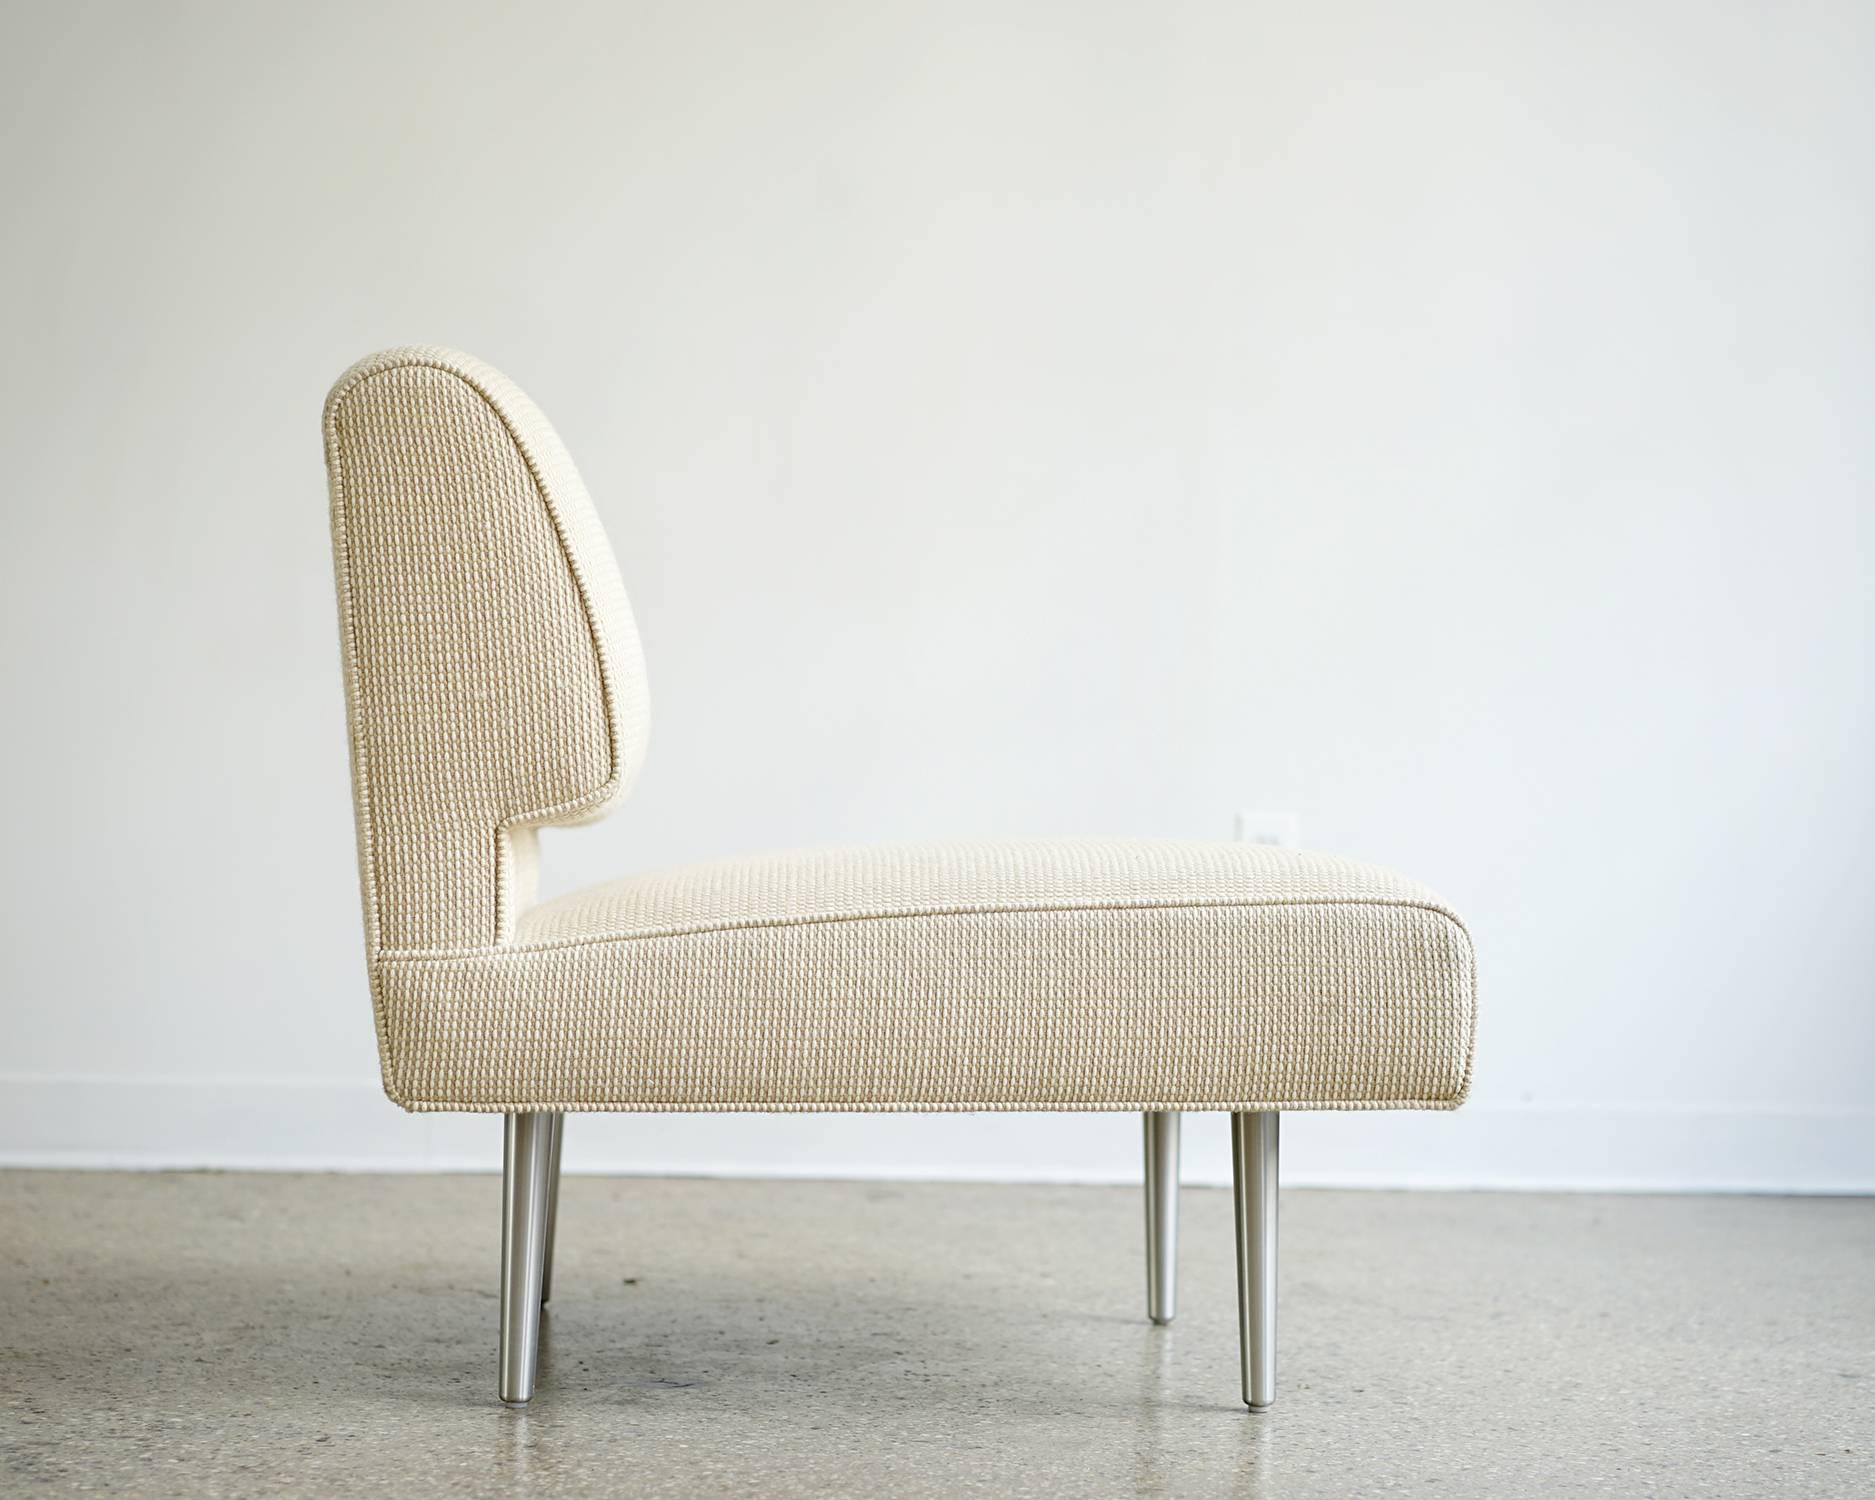 American Gabrielle Chair by Edward Wormley